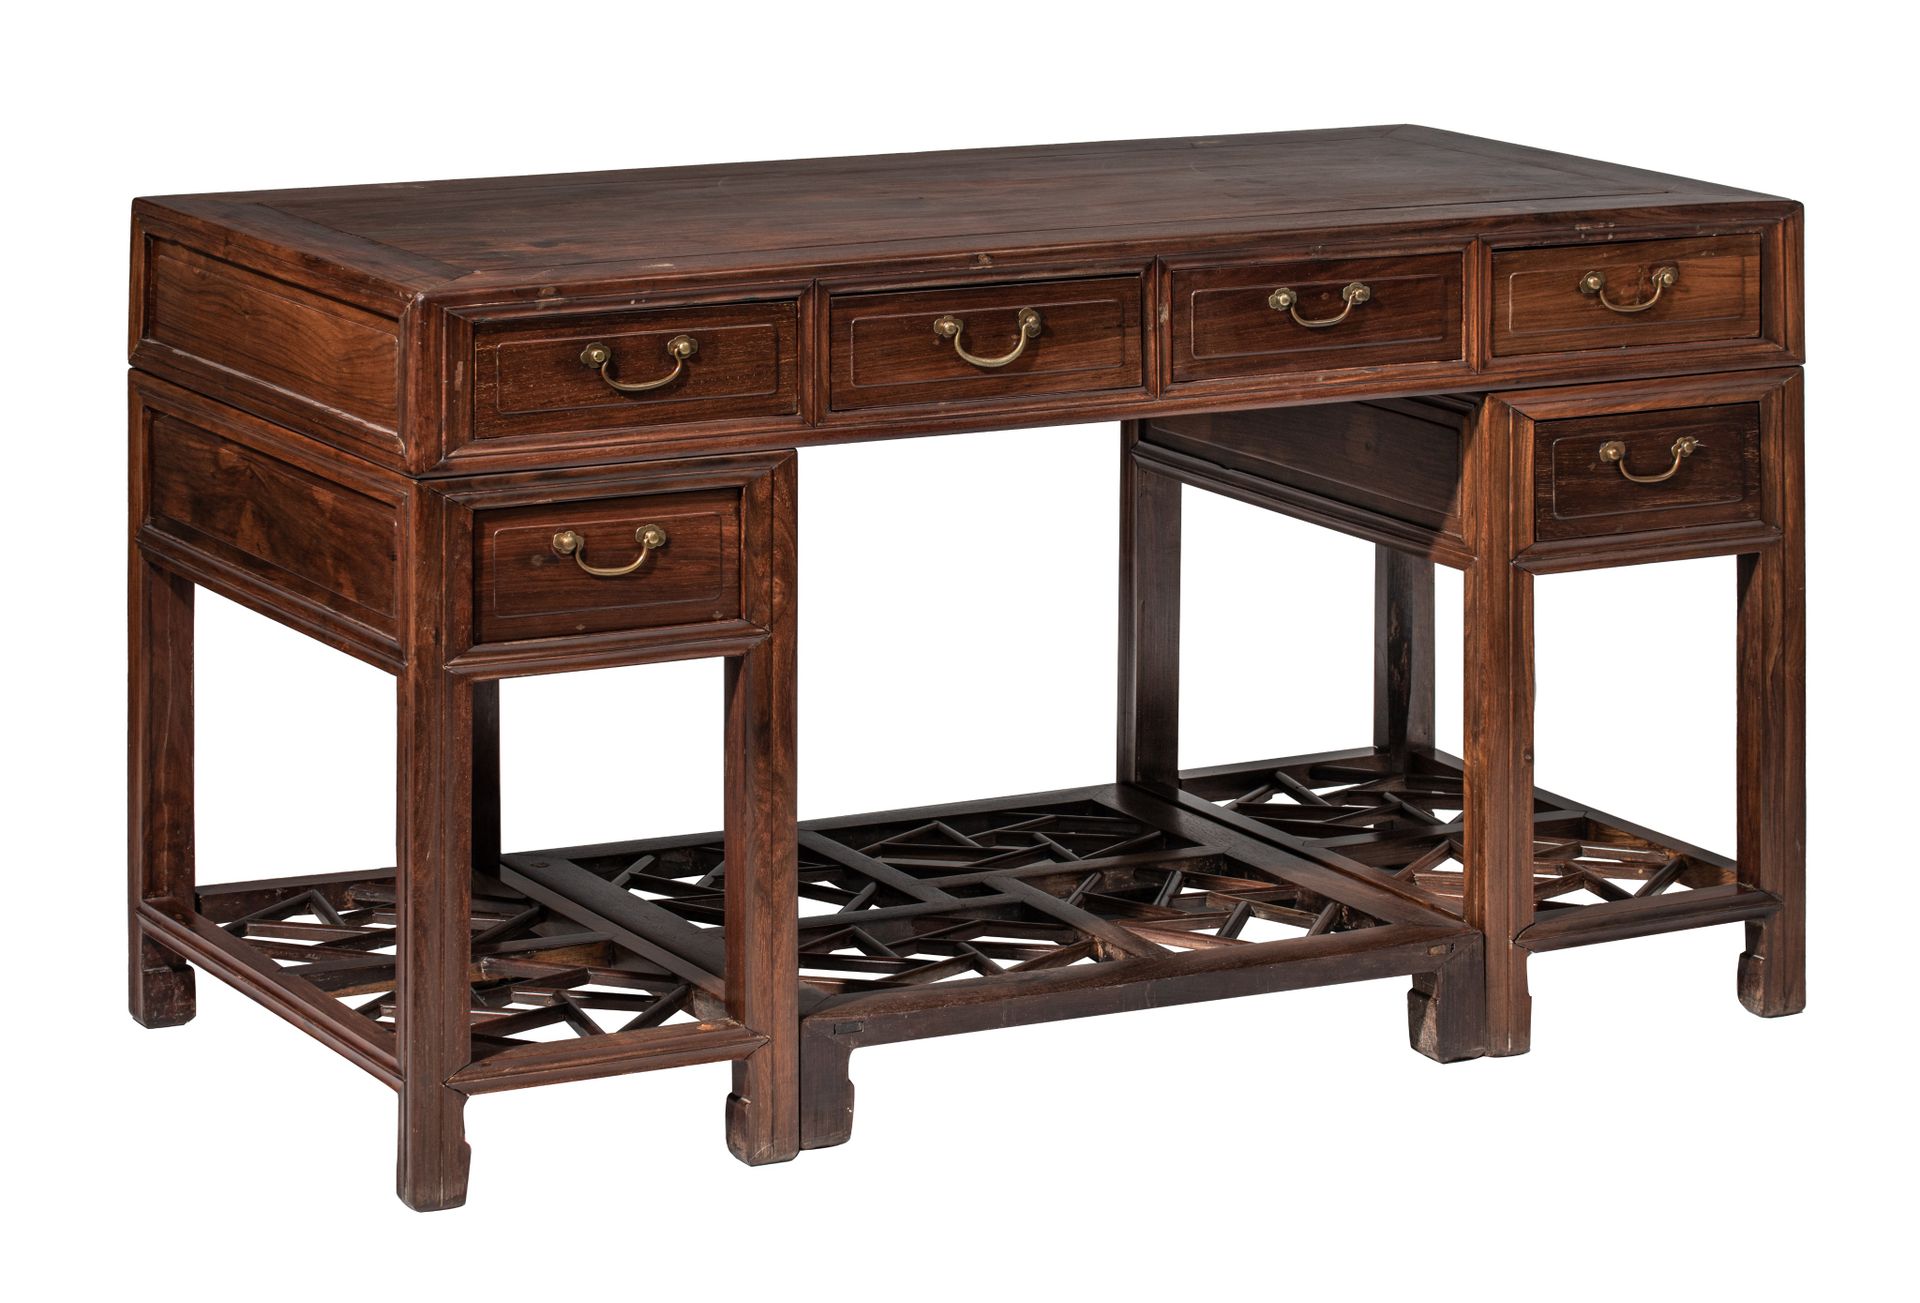 A Chinese hardwood desk, 20thC, H 83 - 144 x 72 cm Chinesischer Hartholzschreibt&hellip;